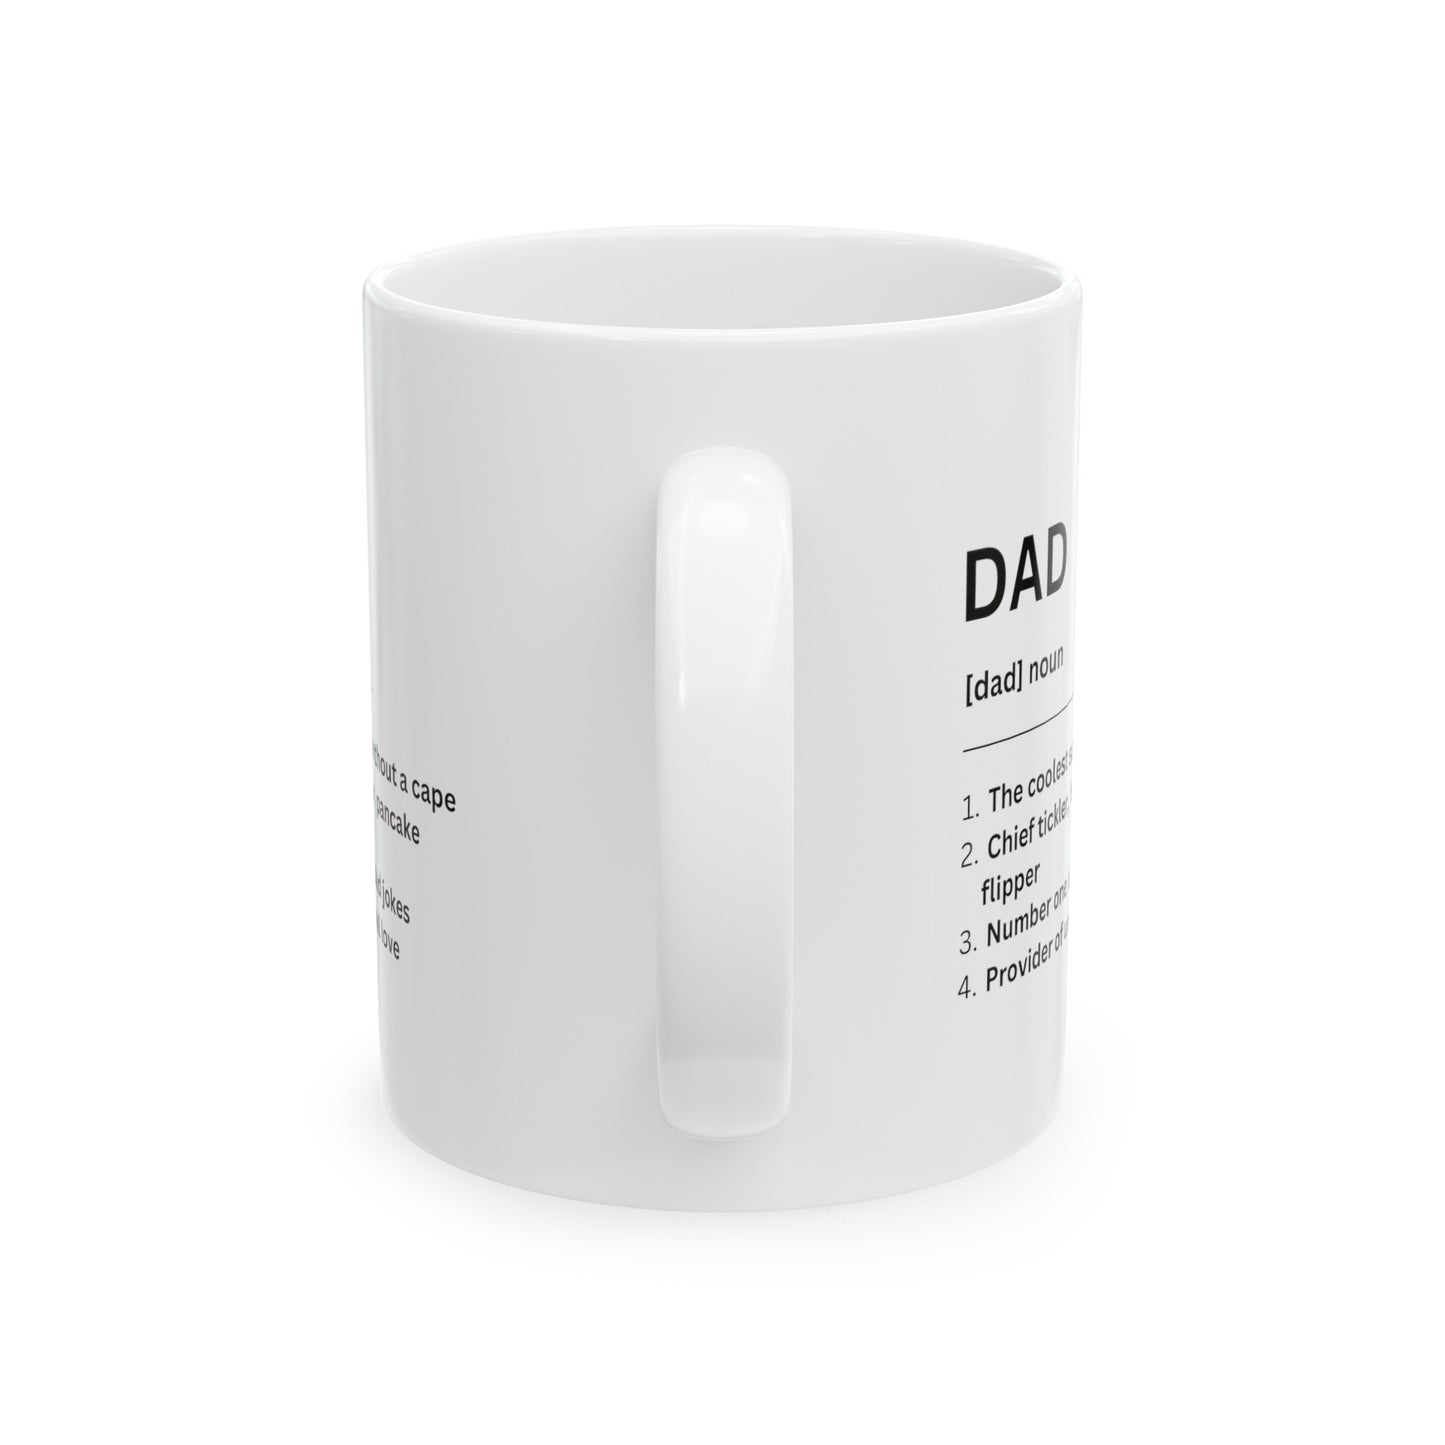 Dad Definition Ceramic Mug (11oz, 15oz) for Father